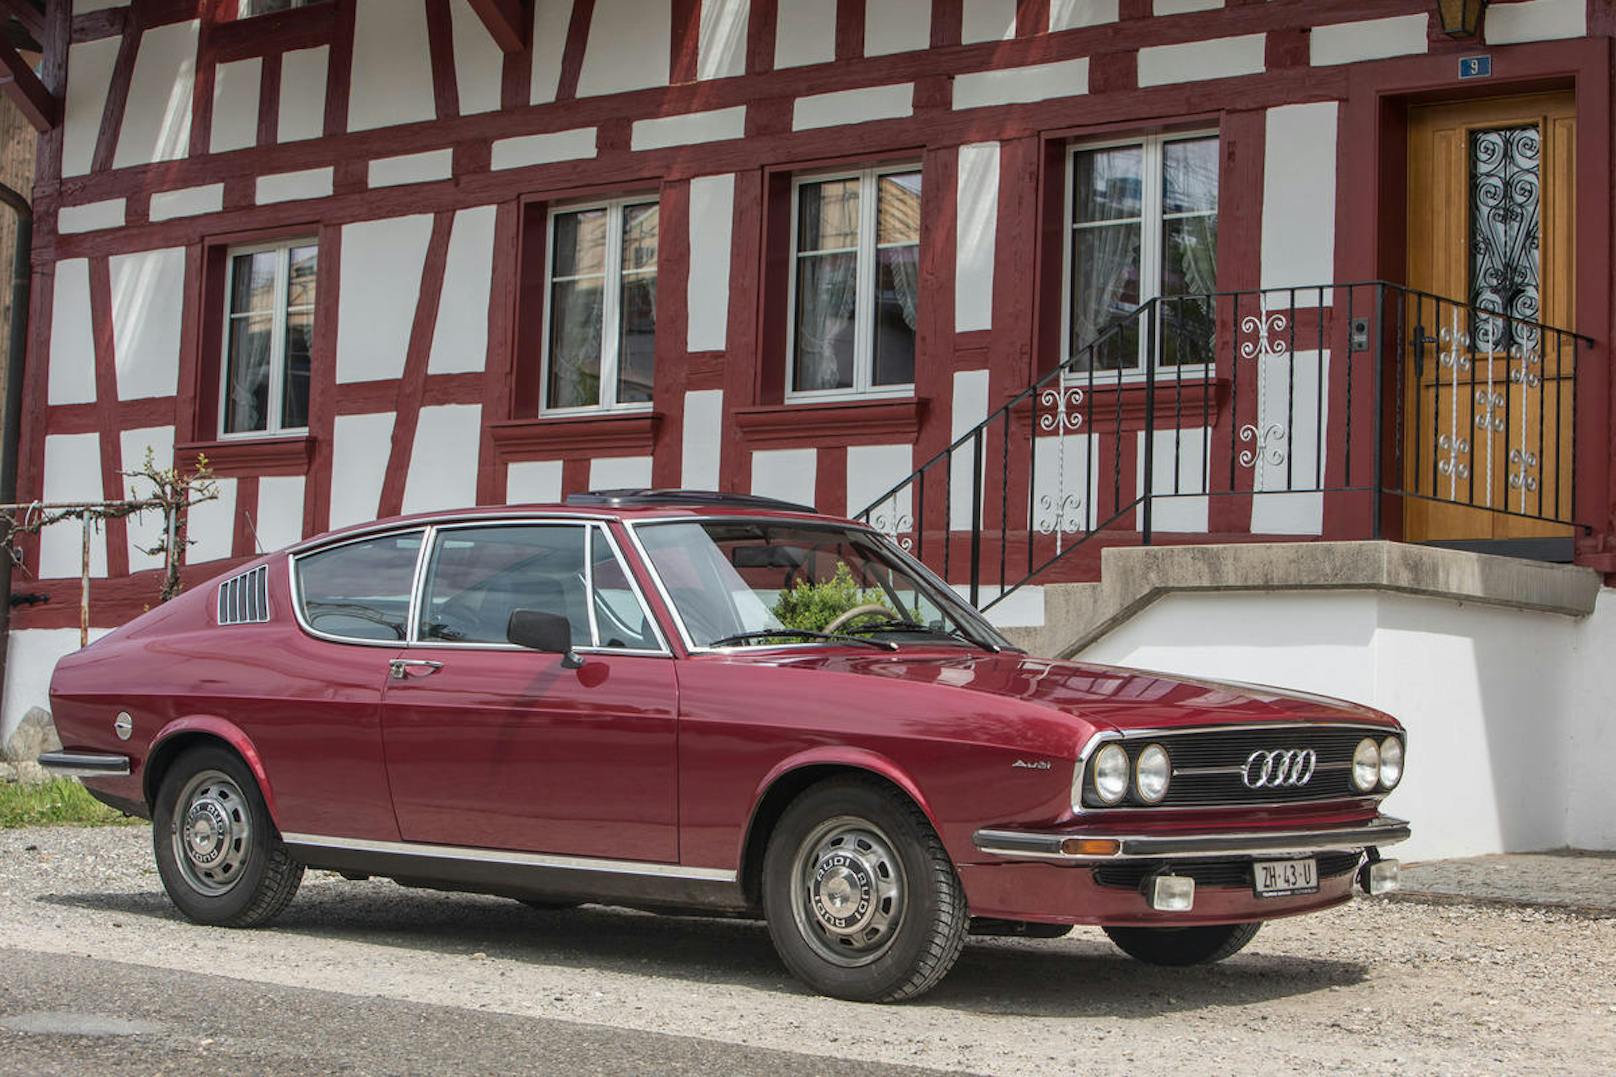 Das Audi Coupé hatte eine gewisse Ähnlichkeit mit dem Fiat Dino Coupé von Bertone - sicherlich ein Kompliment für die Ingolstädter Designer.